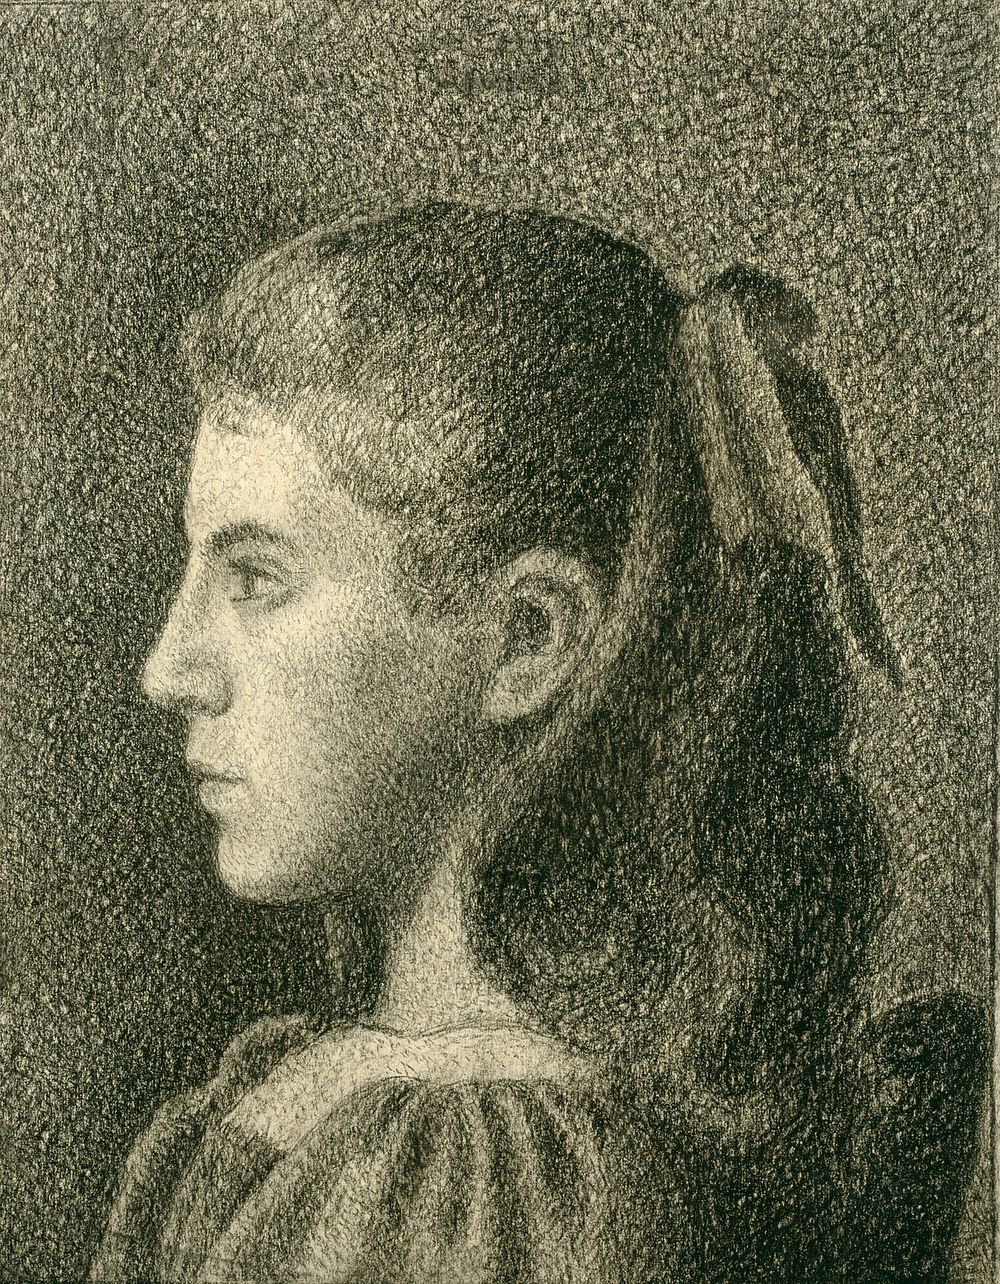 Portrait of Berthe Serruys by Georges Lemmen